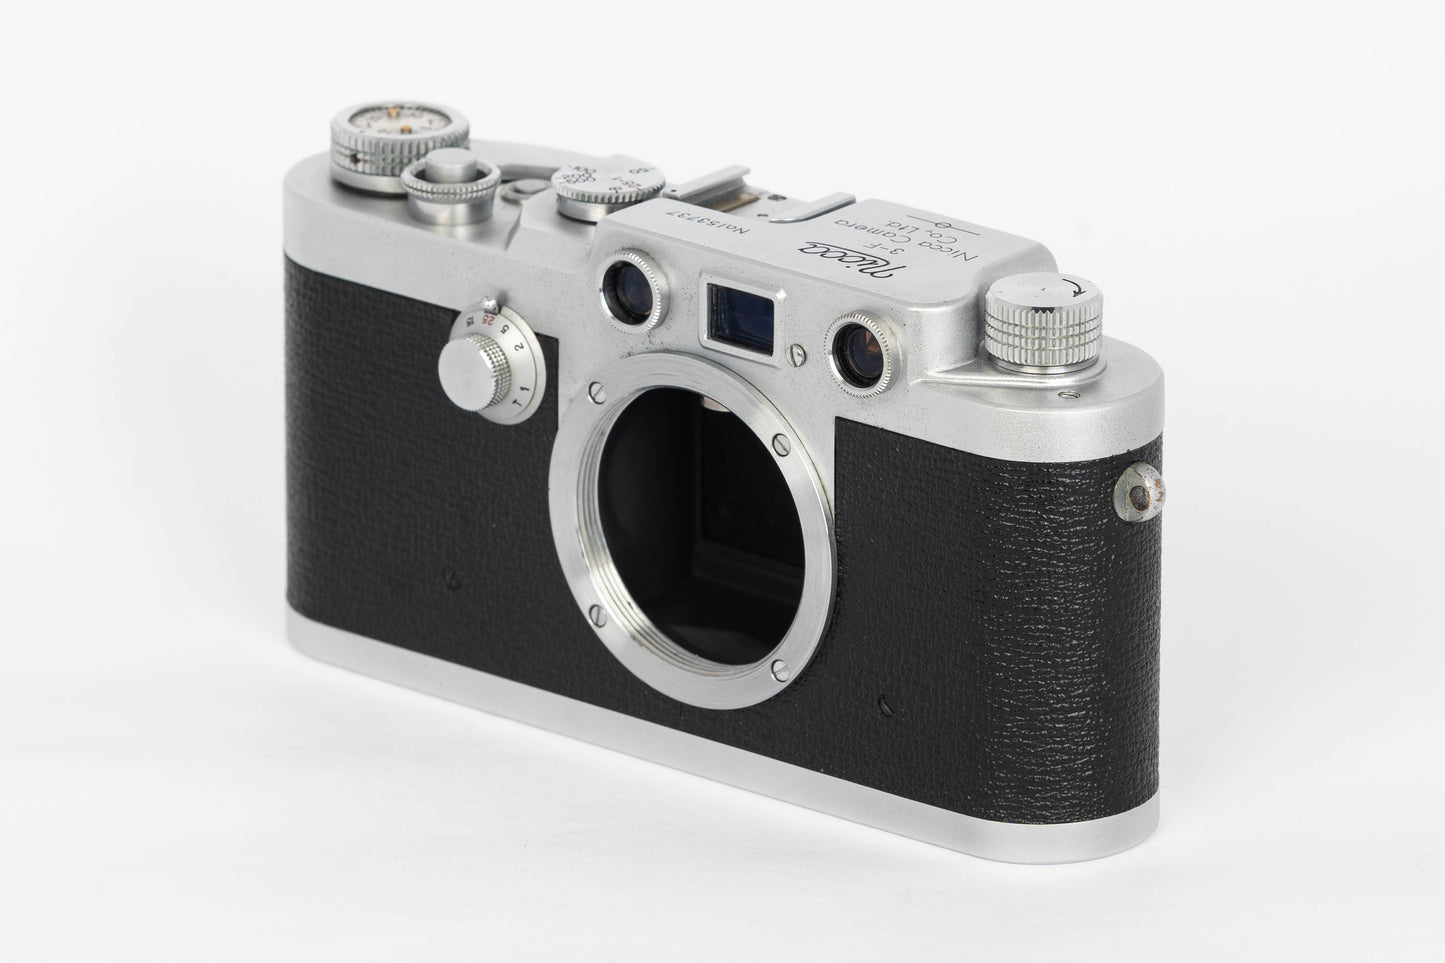 Nicca 3-F IIIf Rangefinder 35mm Film Camera Body LTM39